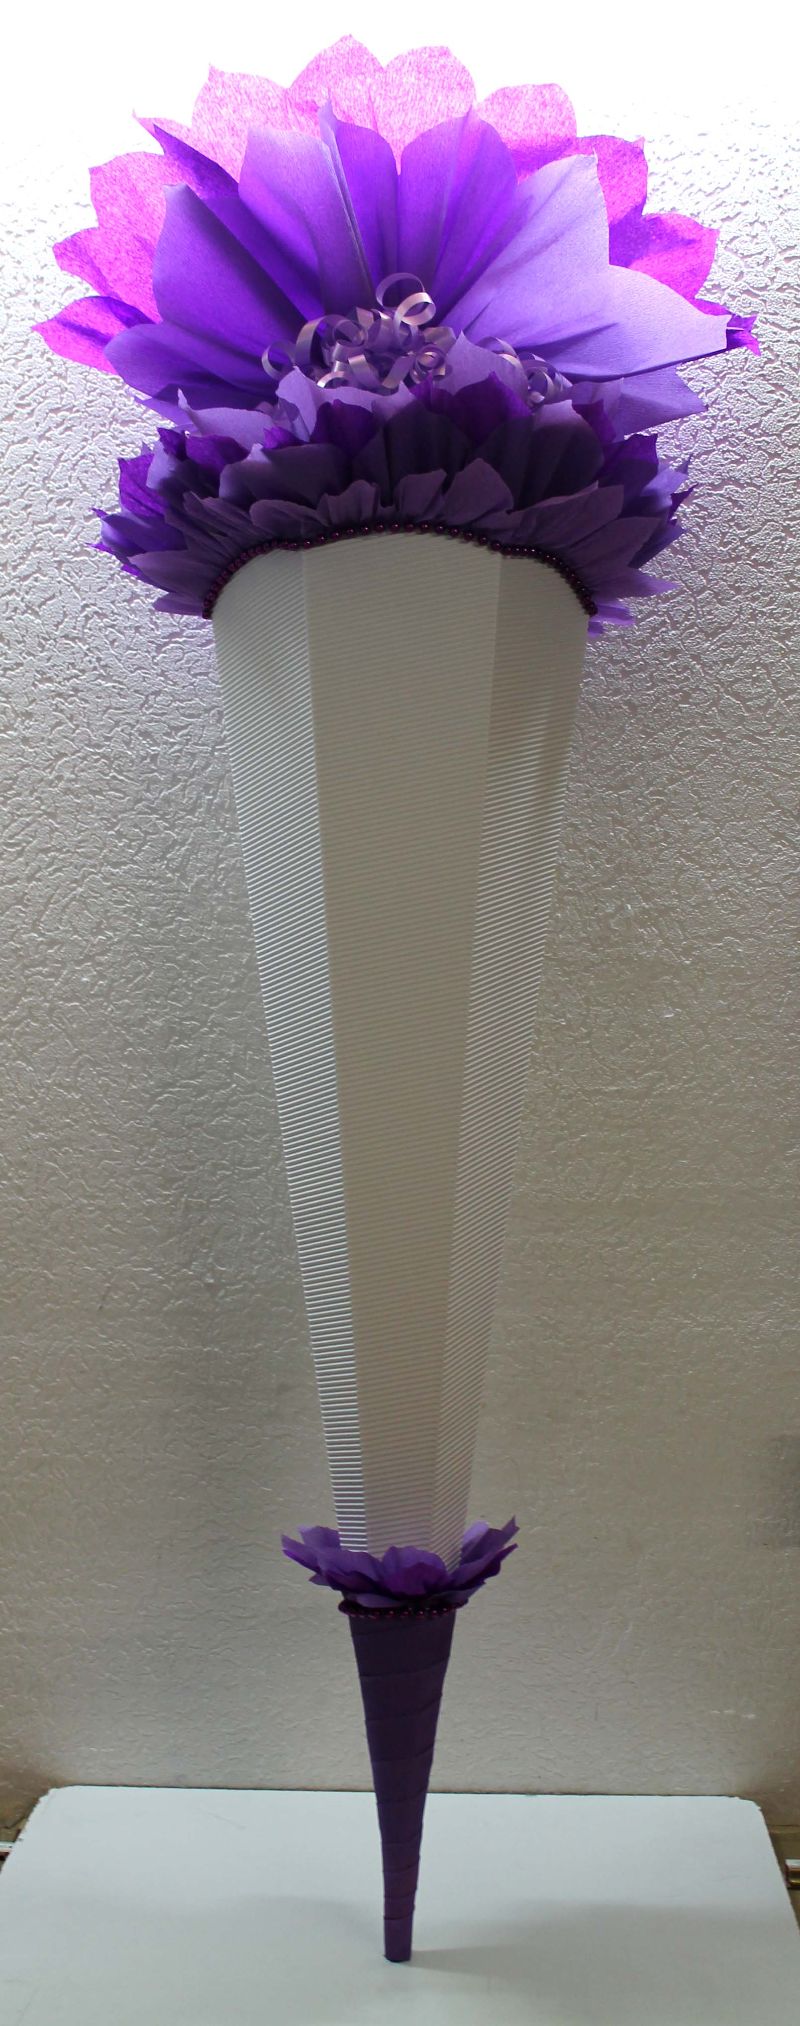  - Schultüte Zuckertüte Rohling zum selbst verzieren Rohling 70 75 80 85 90 100 cm / 1m für Mädchen HANDARBEIT violett lila weiß